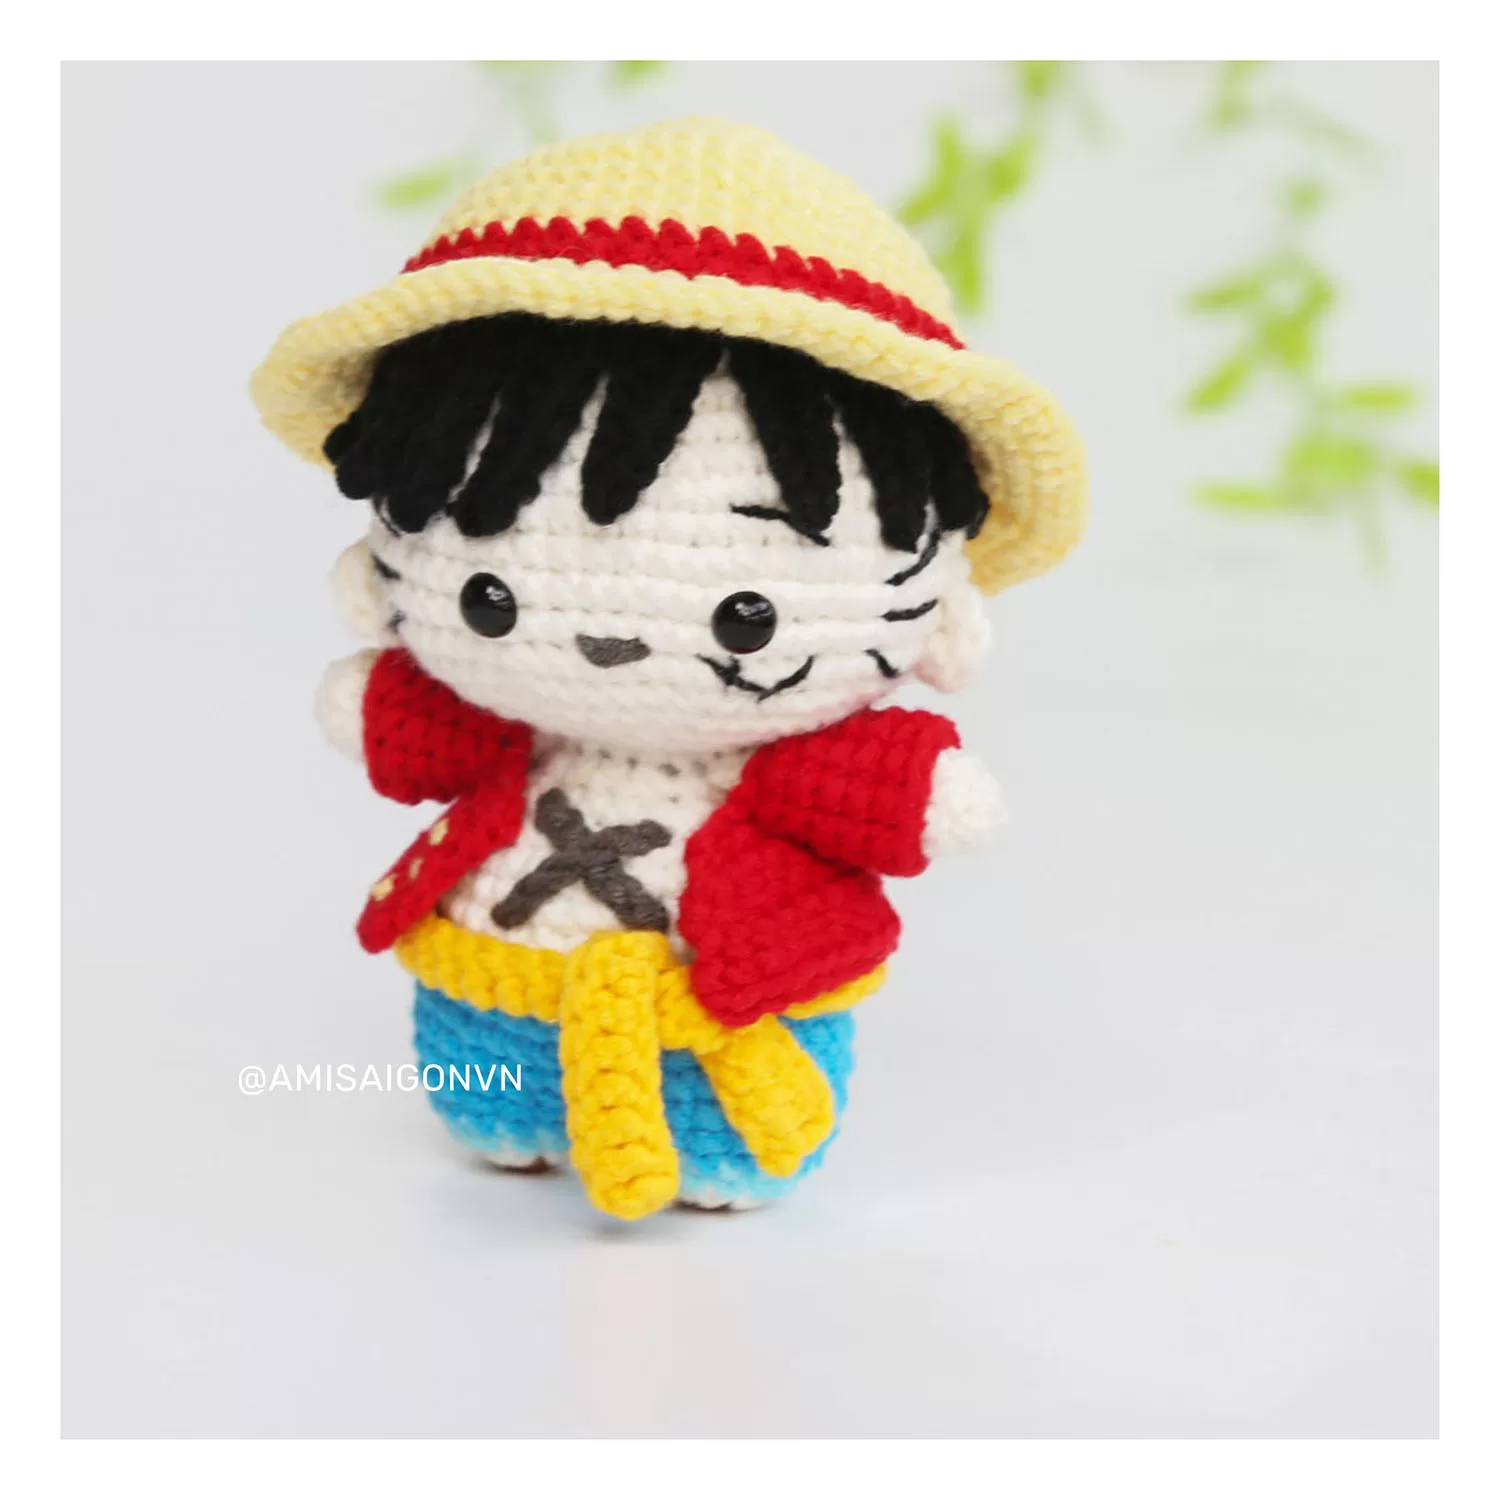 Monkey D. Luffy Doll Amigurumi | Crochet Pattern | Amigurumi Tutorial PDF in English | AmiSaigon